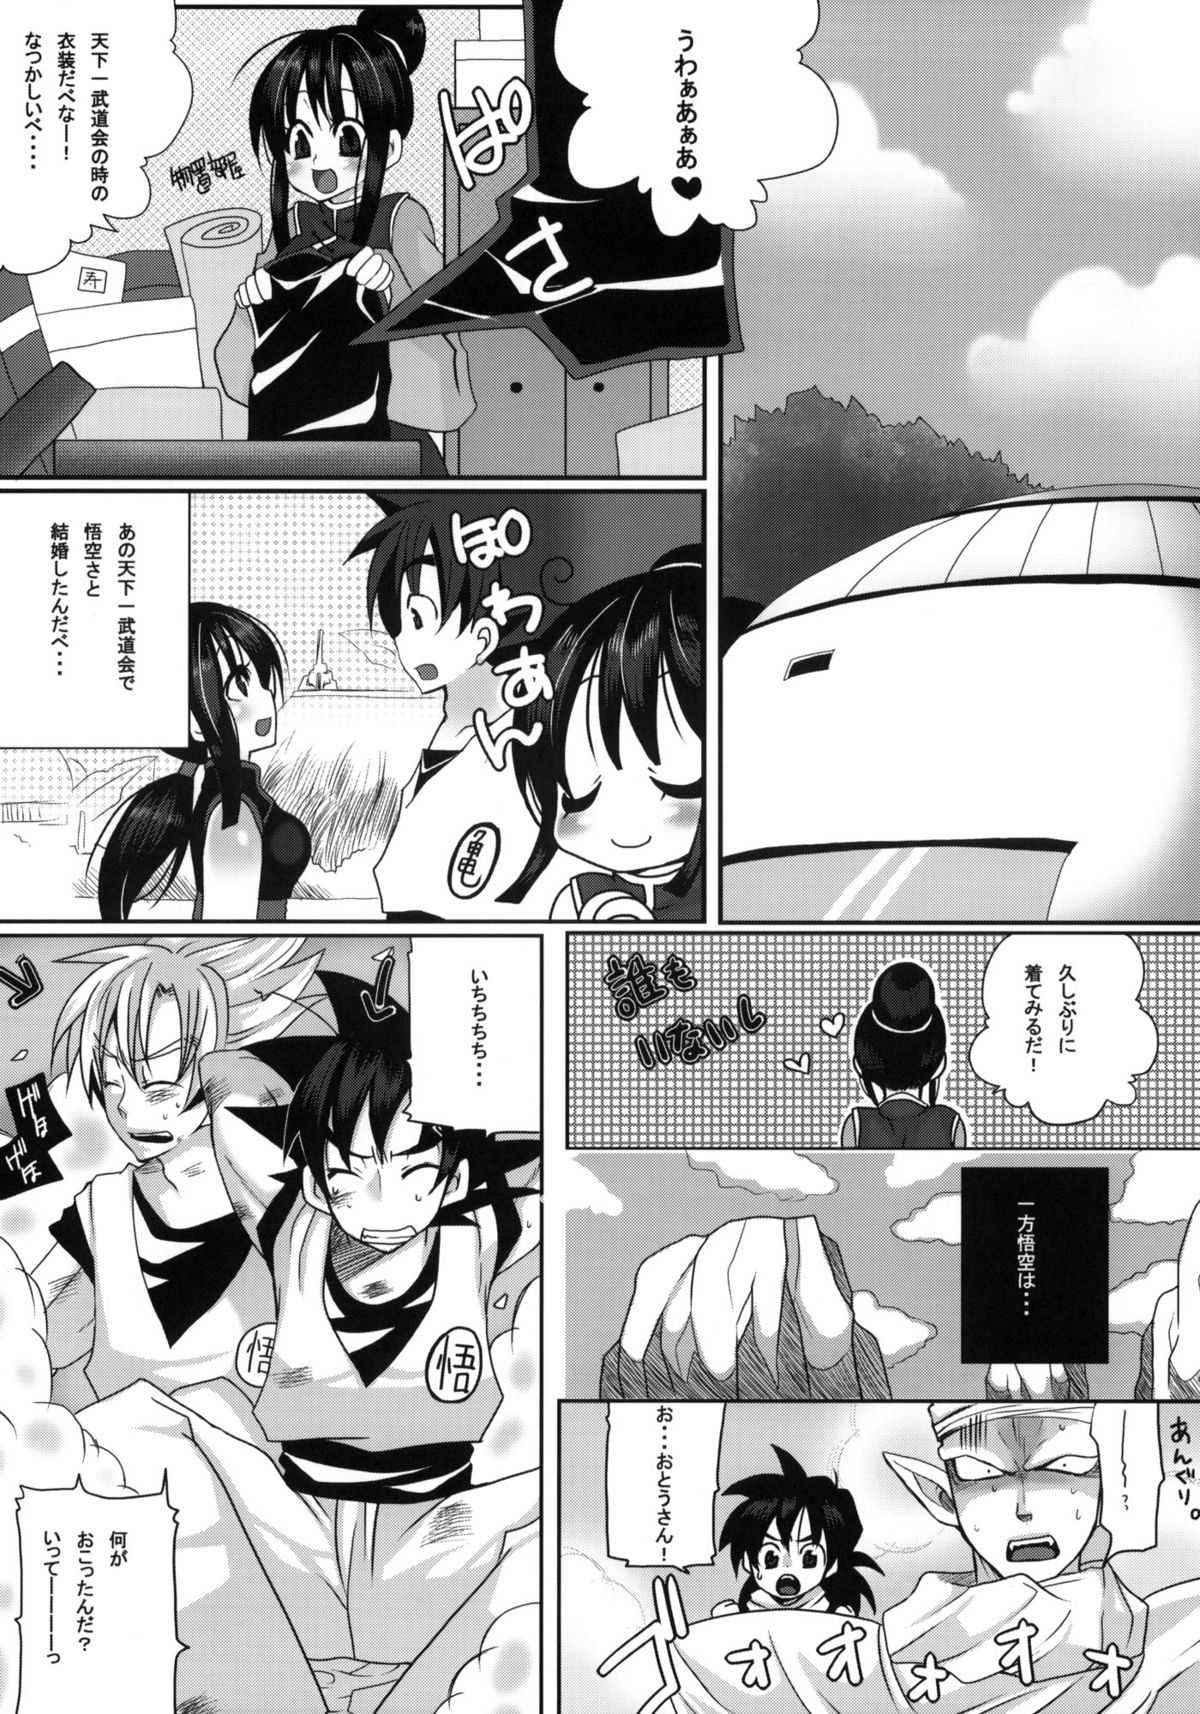 (COMIC1☆4) [Tsurikichi Doumei] W Poron-Kougouimashita！~Daradara~ (Durarara!! / Dragon Ball) (COMIC1☆4) (同人誌) [釣りキチ同盟] Wポロン-交合いましたァ！~だらだら~ (デュラララ！/ ドラゴンボール)